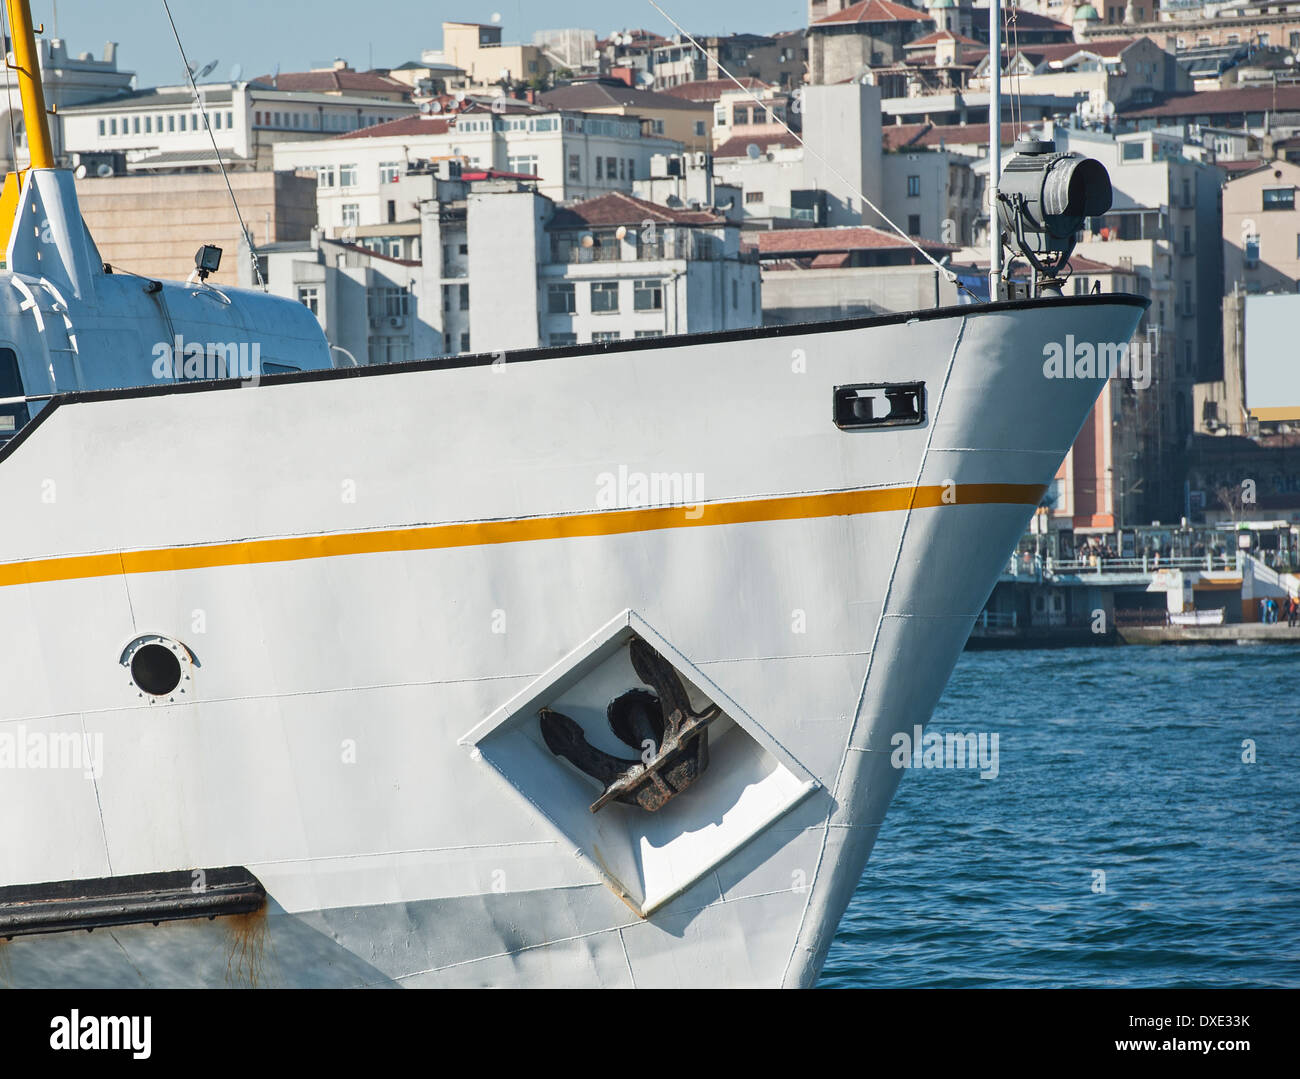 Proa de un buque en el puerto grande de metal contra el fondo del paisaje urbano Foto de stock